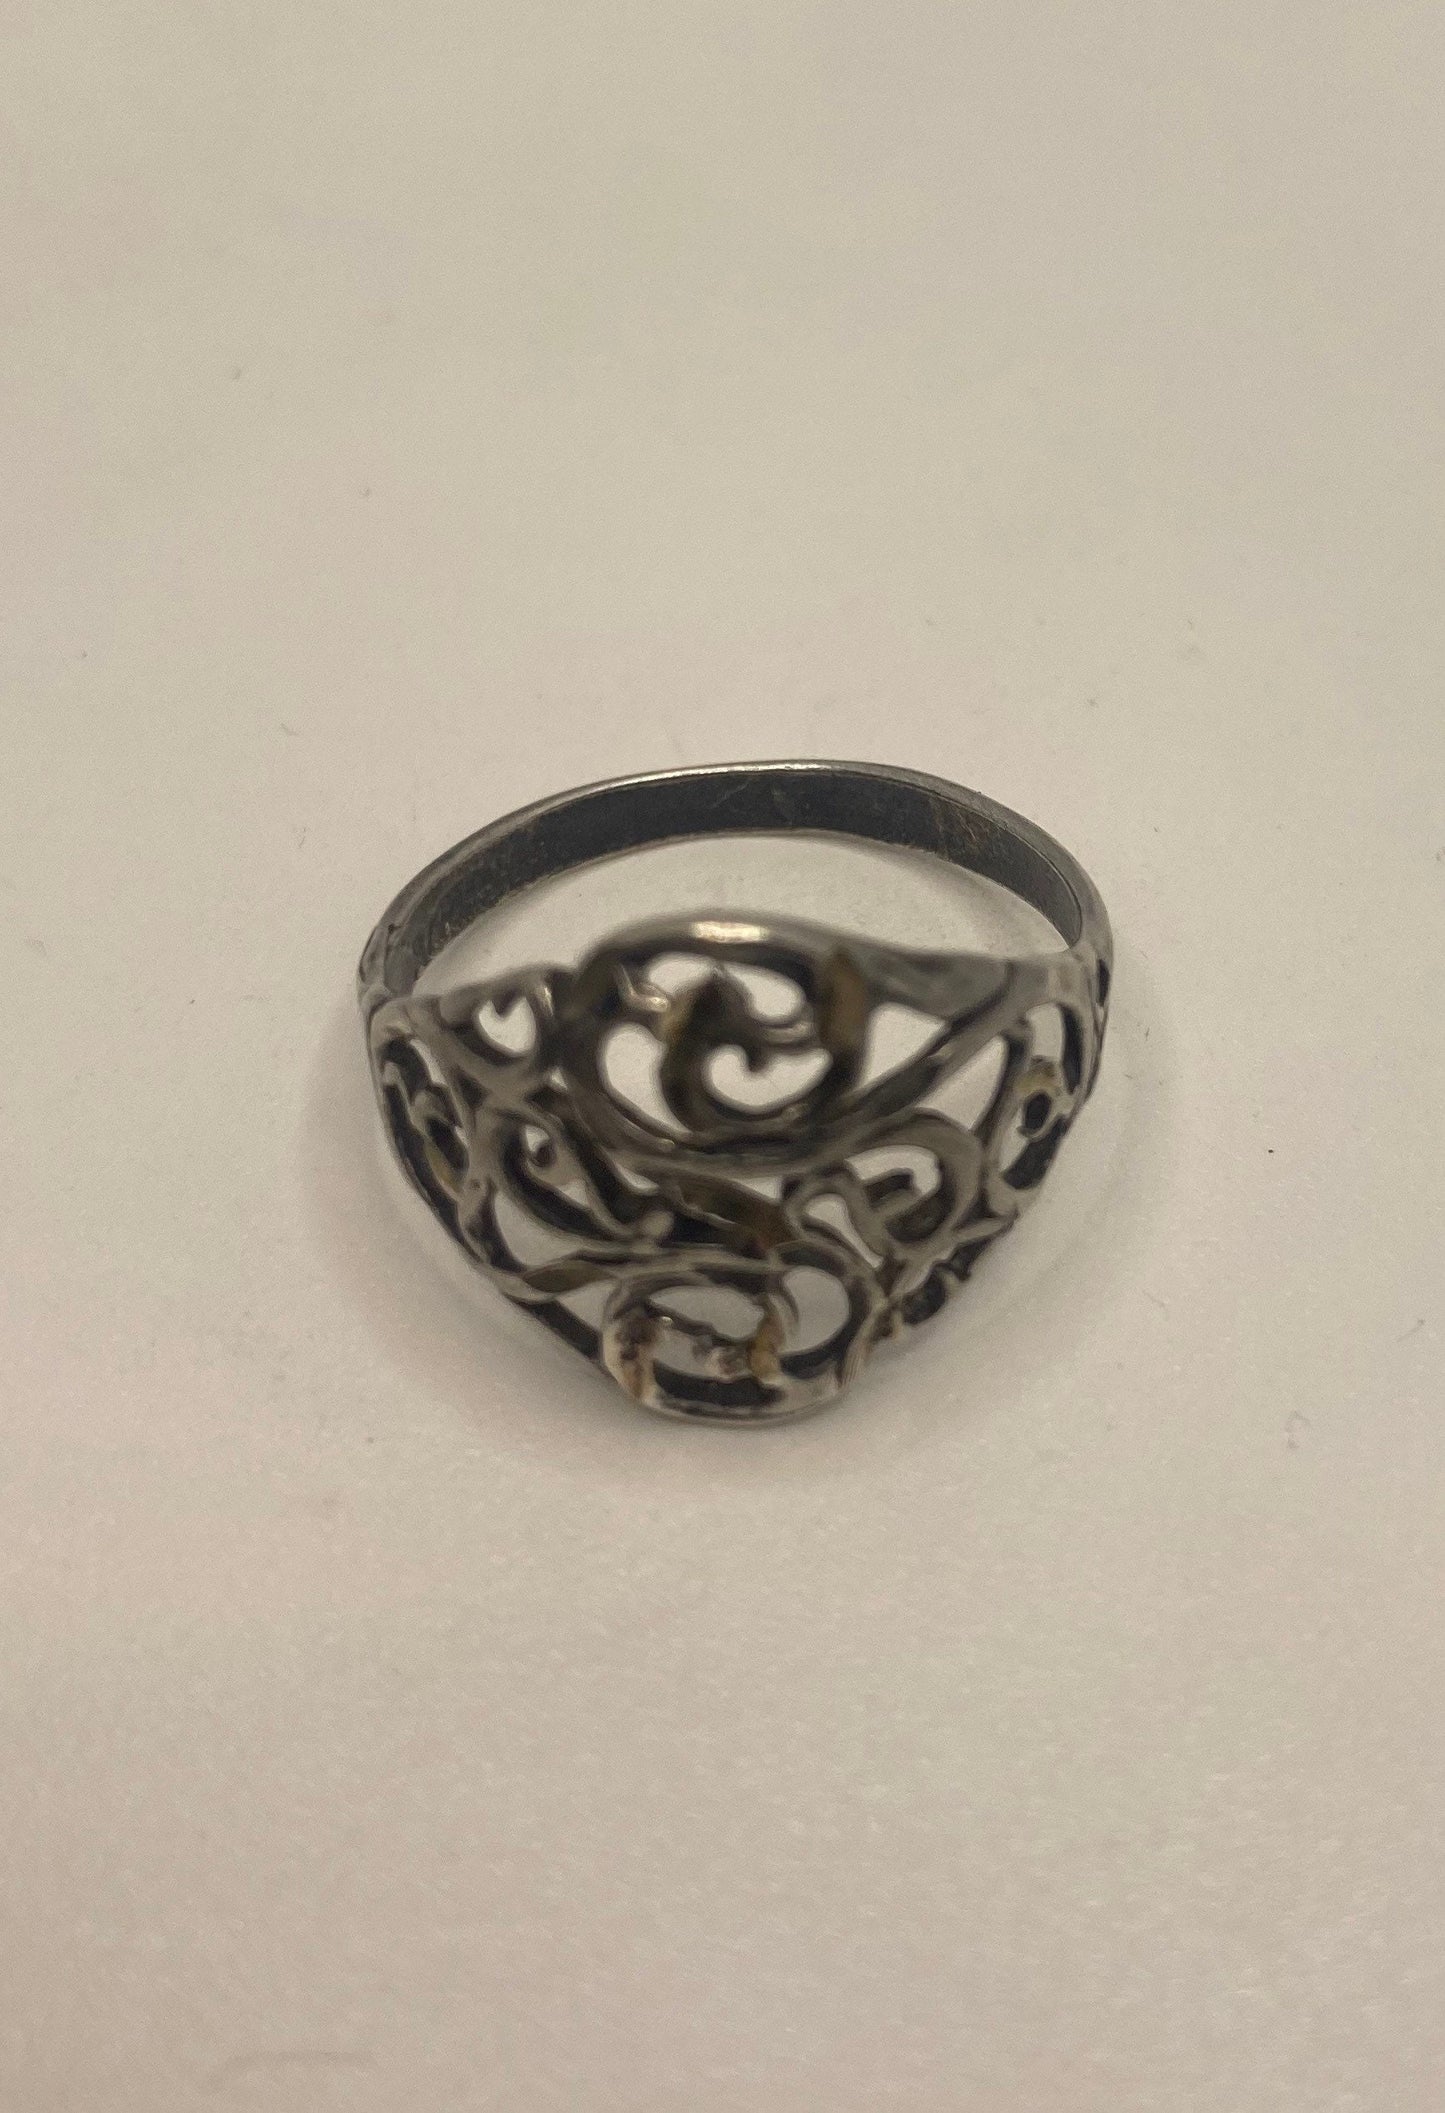 Vintage 925 Sterling Silver Filigree Ring